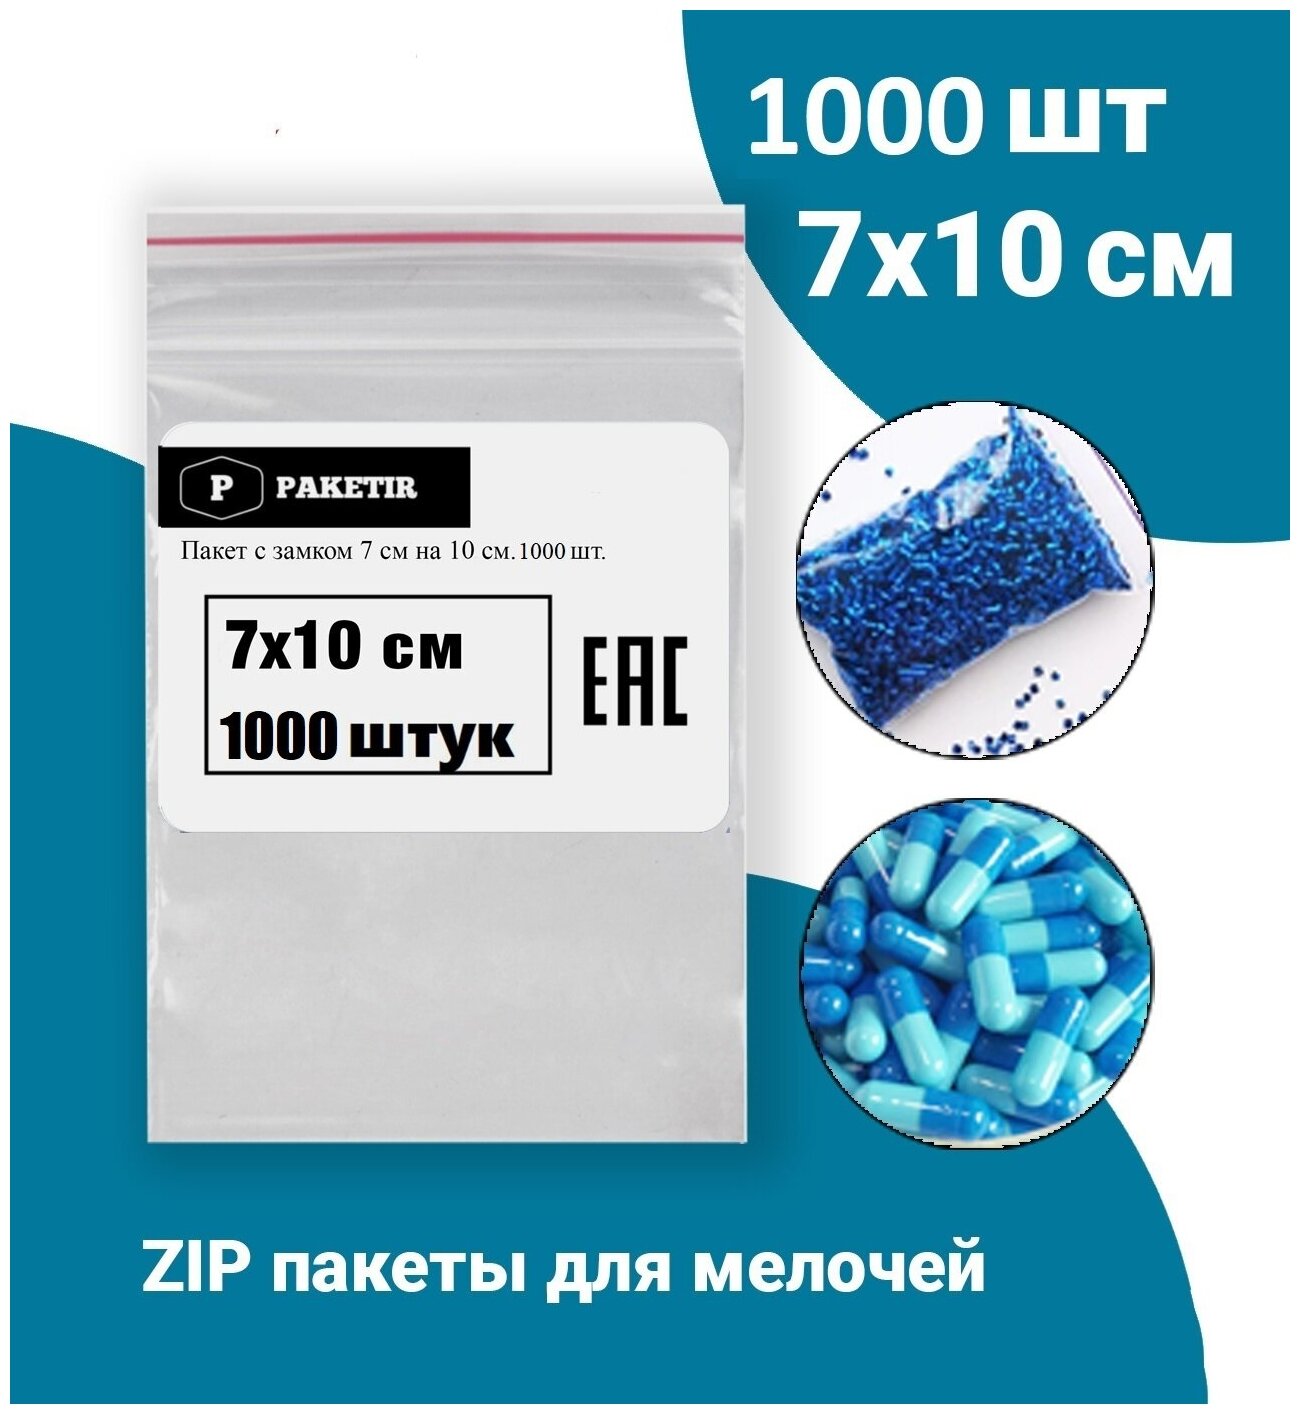 Пакеты упаковочные Zip Lock 7*10 см 1000 шт с застежкой Зип Лок хранения заморозки с замком зиплок гриппер